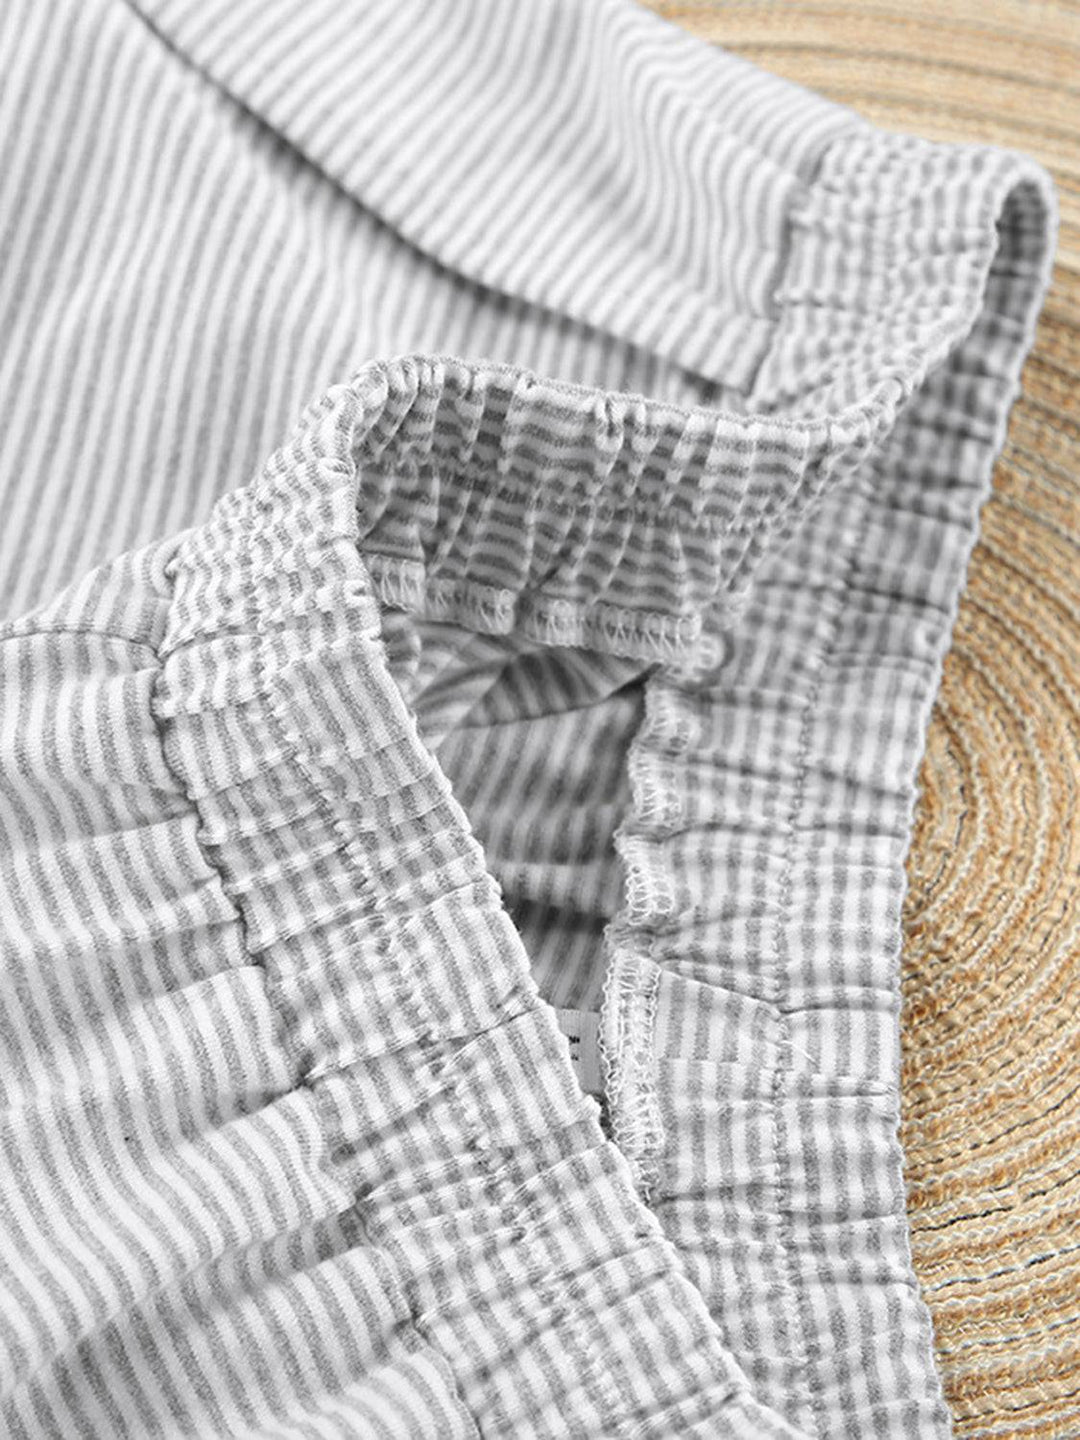 a close up of a shirt on a woven mat